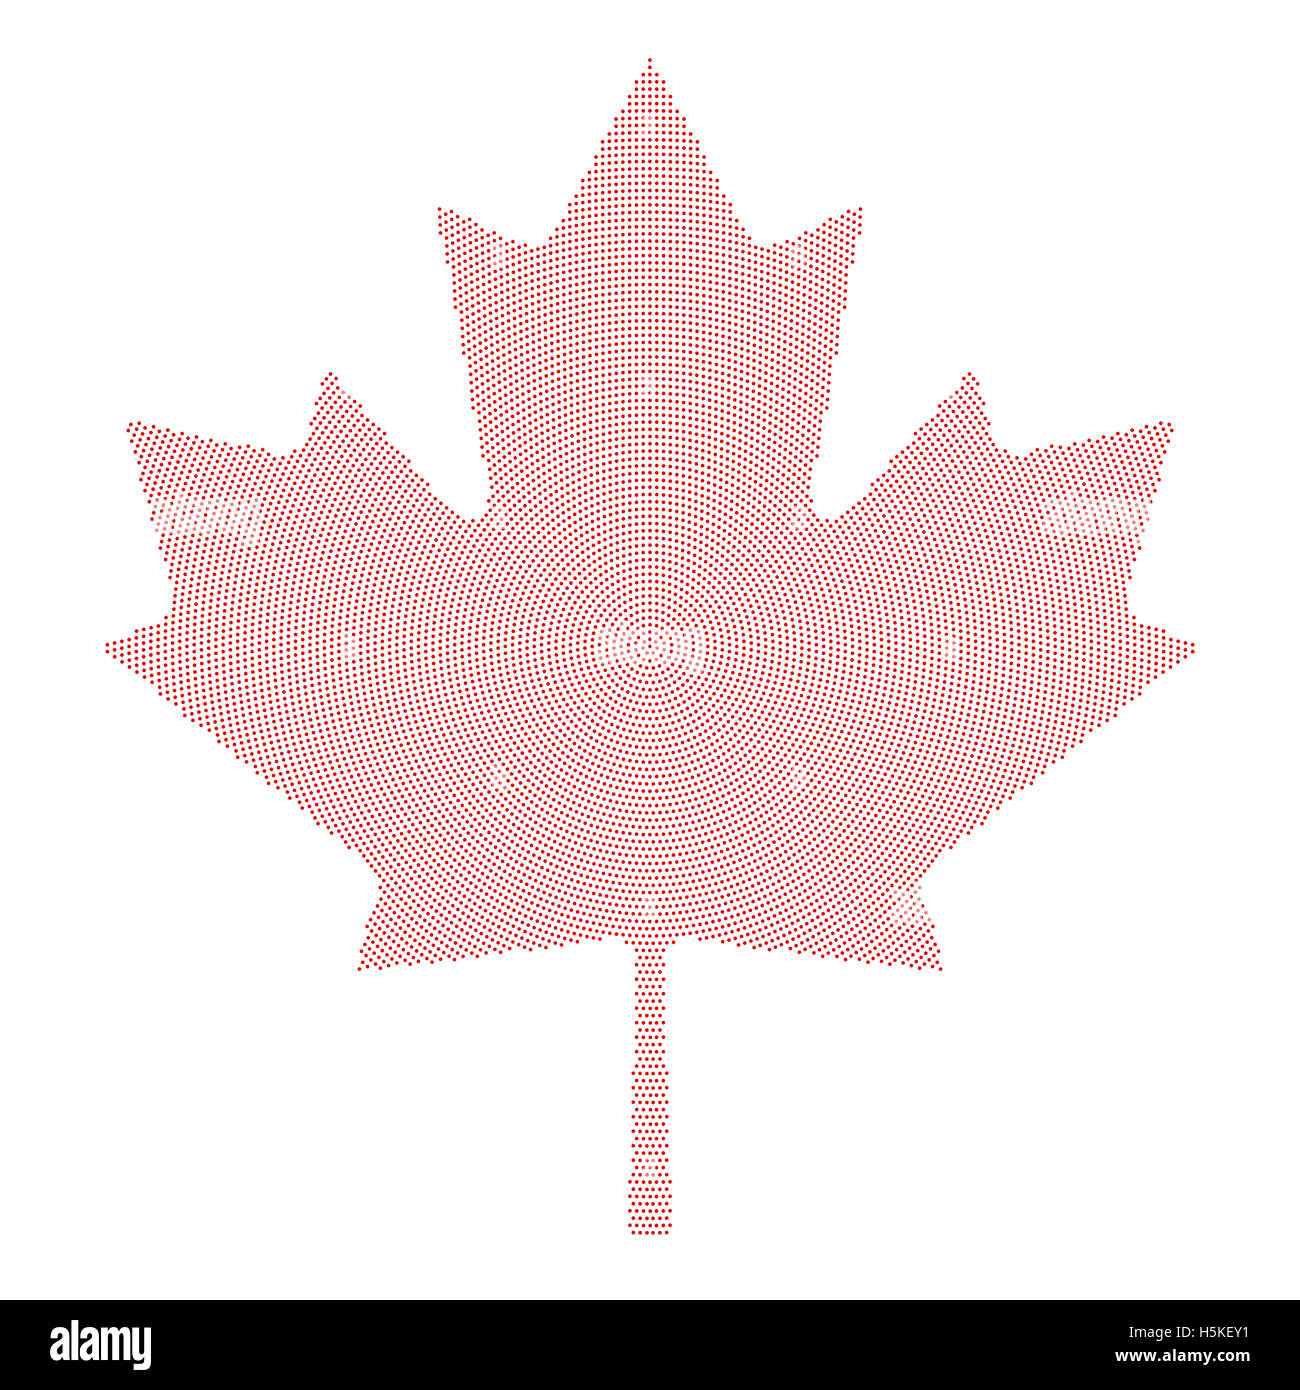 Foglia di acero simbolo rosso radiale pattern a punti. Caratteristica Foglia di acero e simbolo nazionale del Canada. Formata da punti. Foto Stock